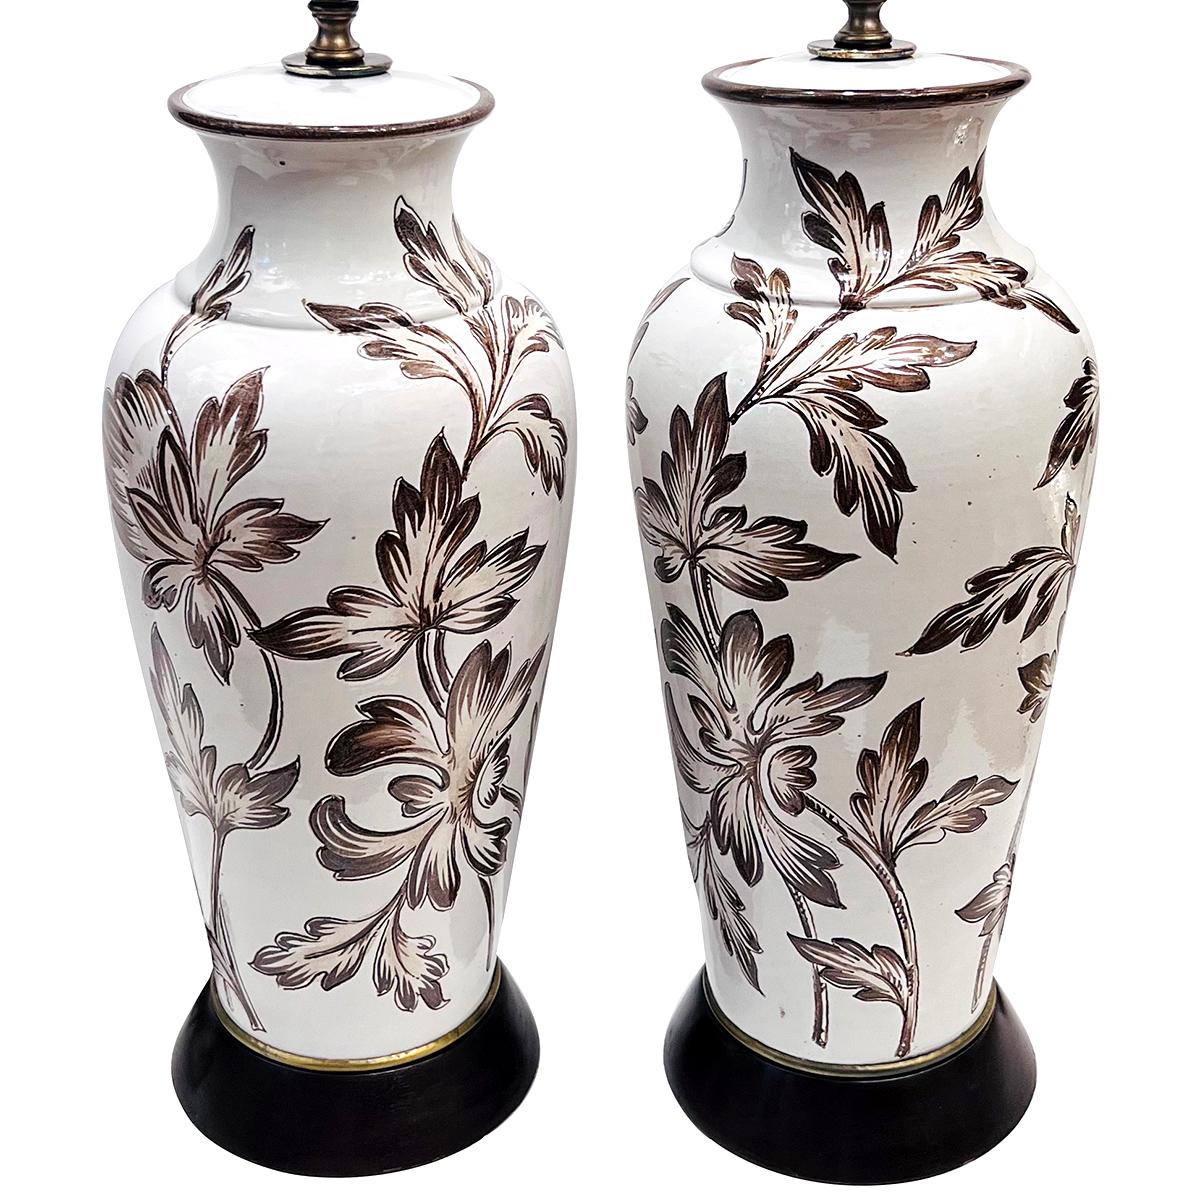 Paire o circa  Lampes en porcelaine anglaise des années 1950 à décor de feuillage.

Mesures :
Hauteur du corps : 18